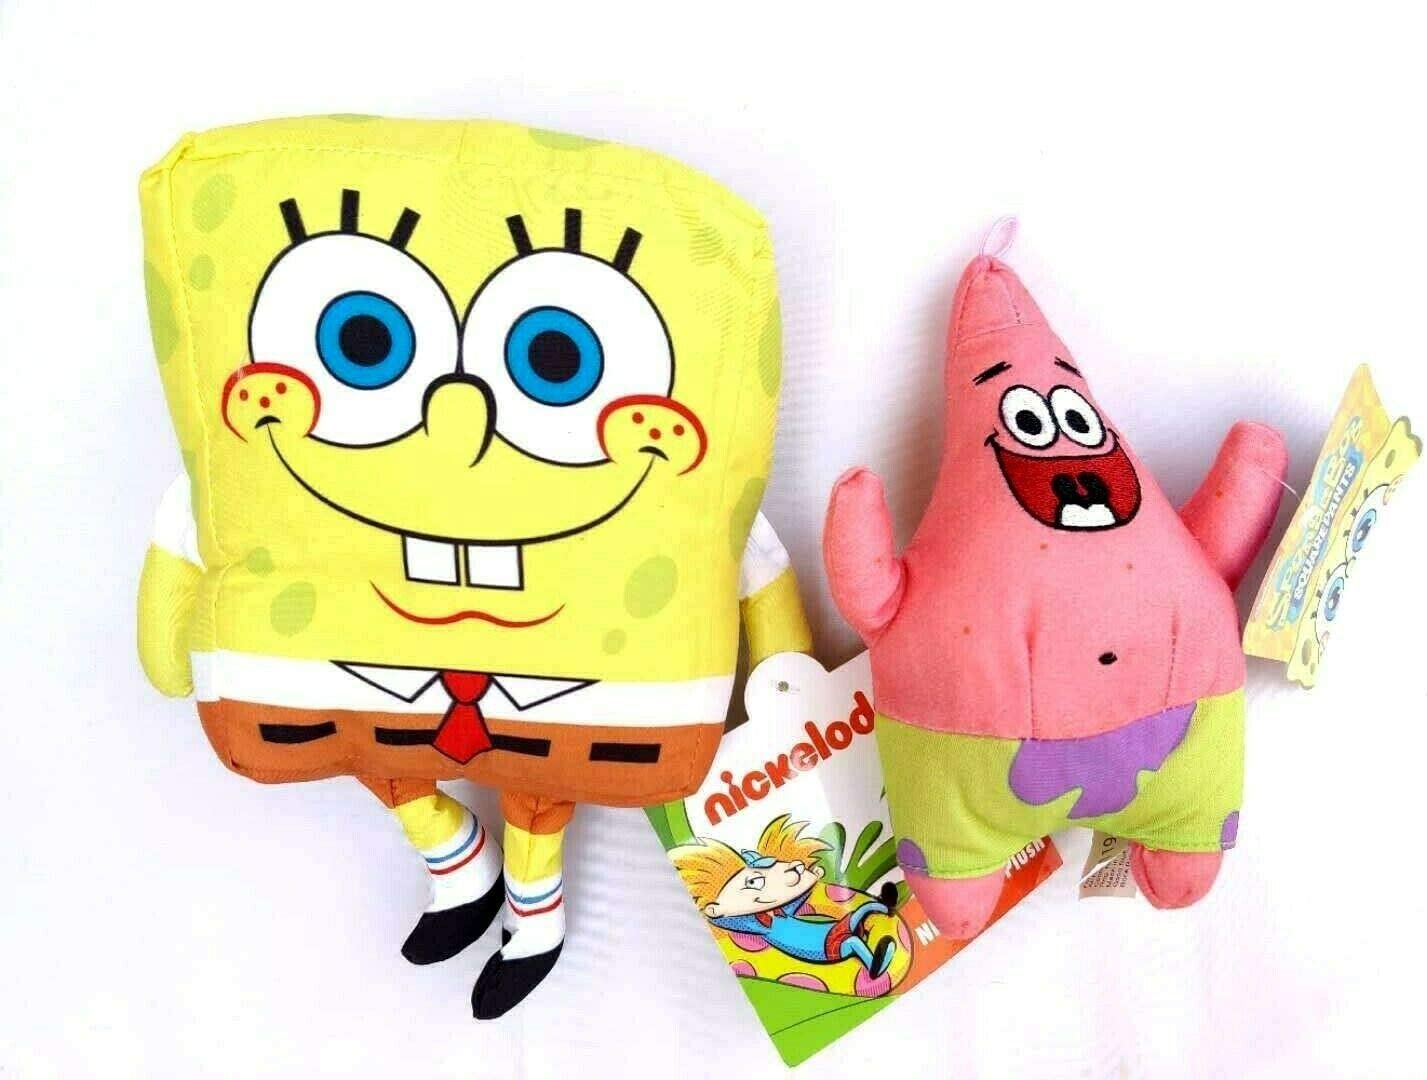 お1人様1点限り スポンジボブ カートゥーンネットワーク Spongebob キャラクター アメリカ限定多数 Spongebob And Patrick Stuffed Figure Plush Doll Toy Set Gift Kids Boys Girlsスポンジボブ カートゥーンネットワーク Spongebob キャラクター アメリカ限定多数